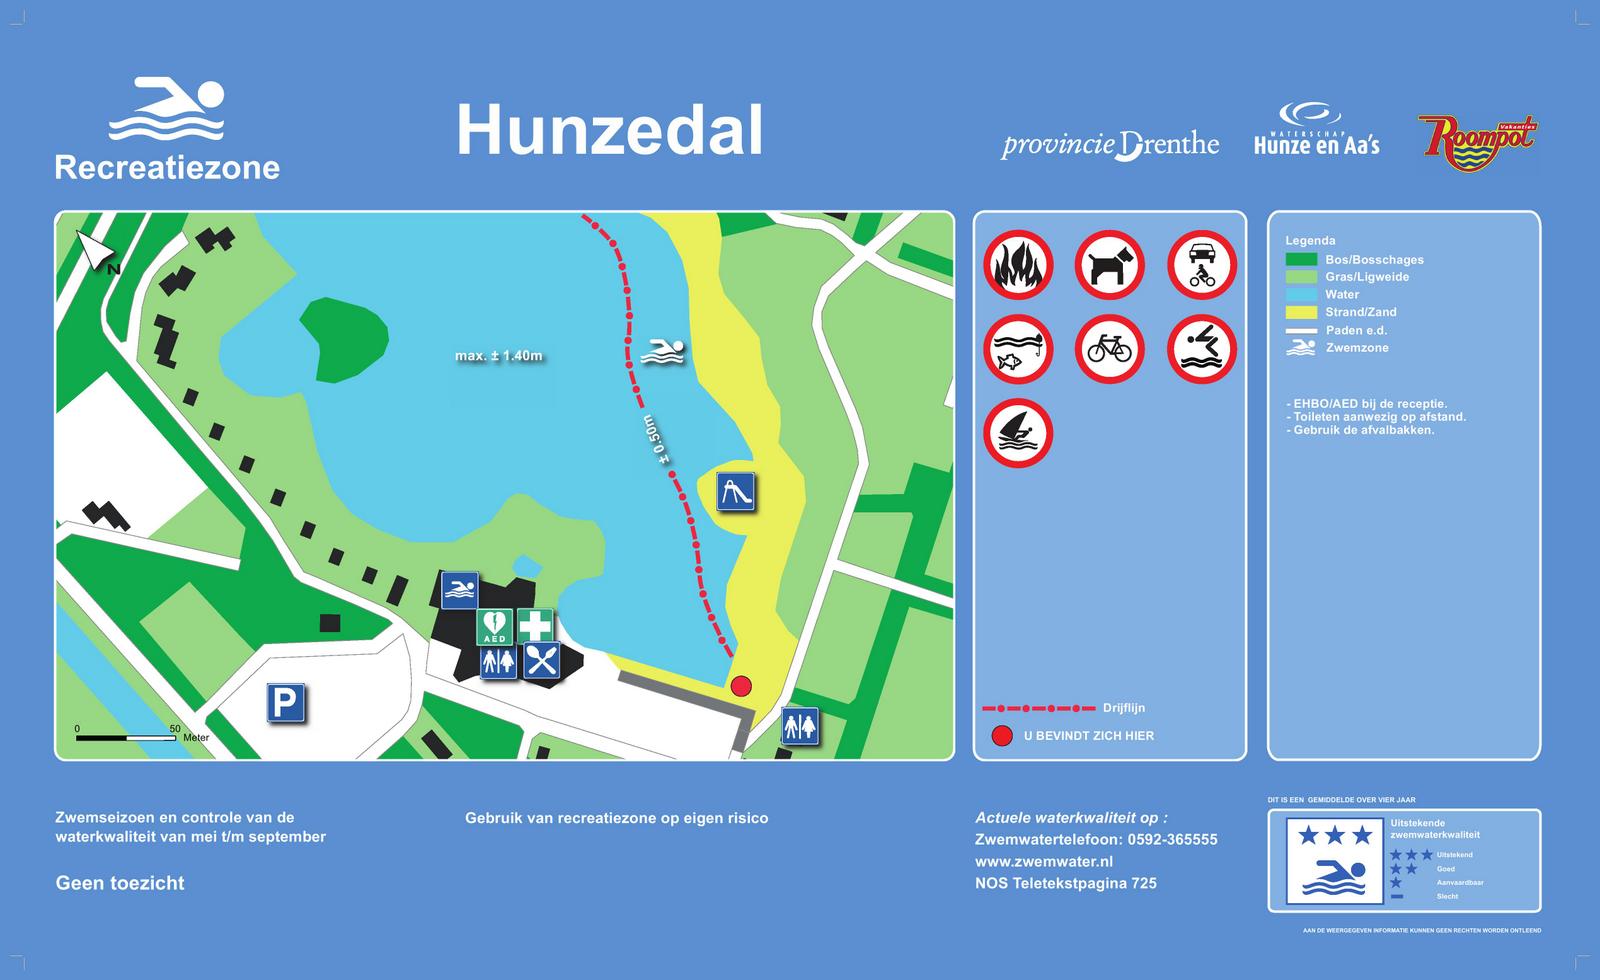 Het informatiebord bij zwemlocatie Hunzedal